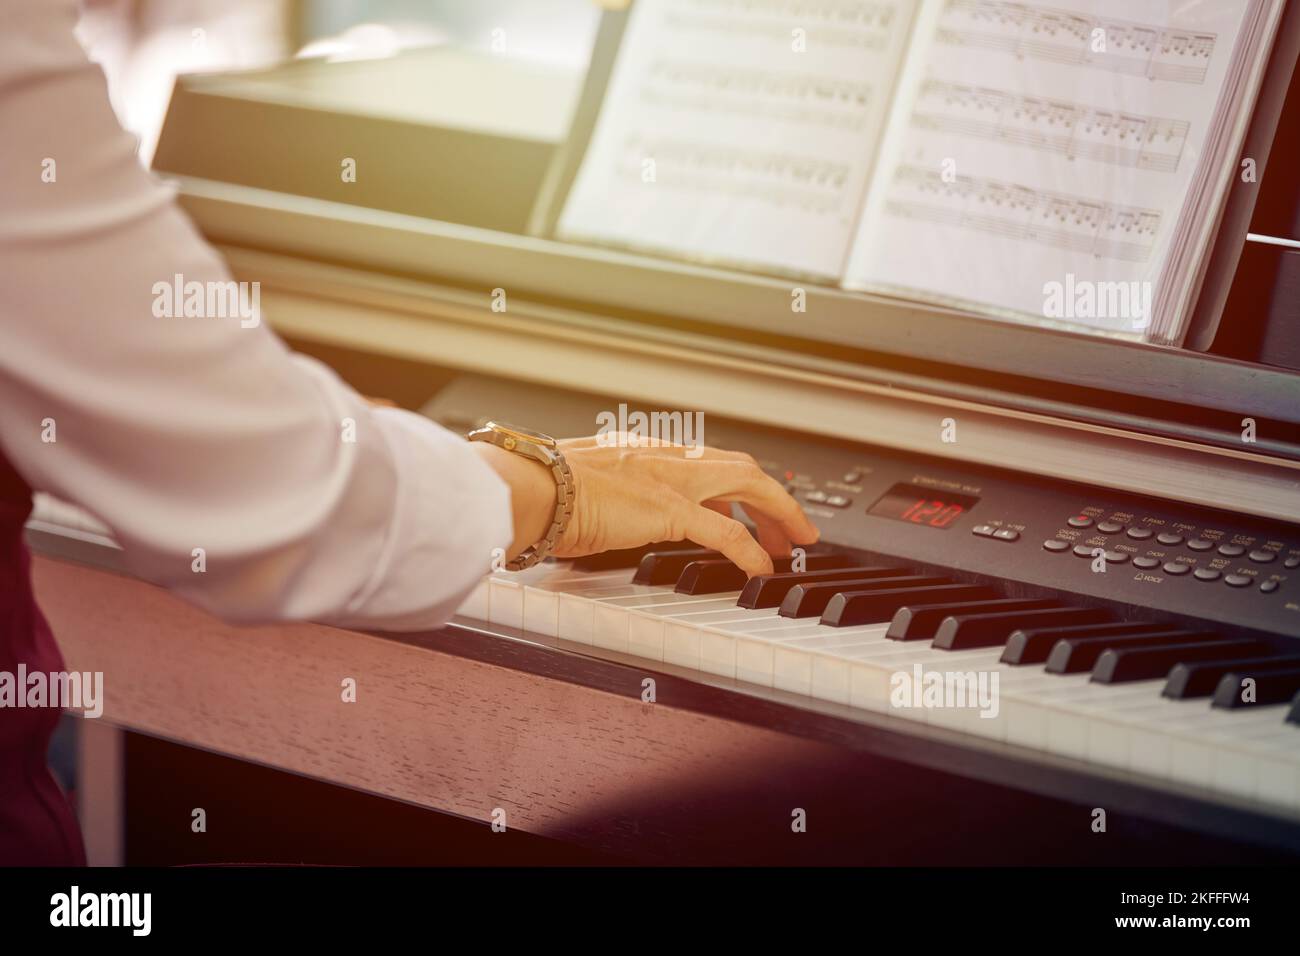 Une Femme Joue Du Piano électrique Lors D'une Performance Musicale